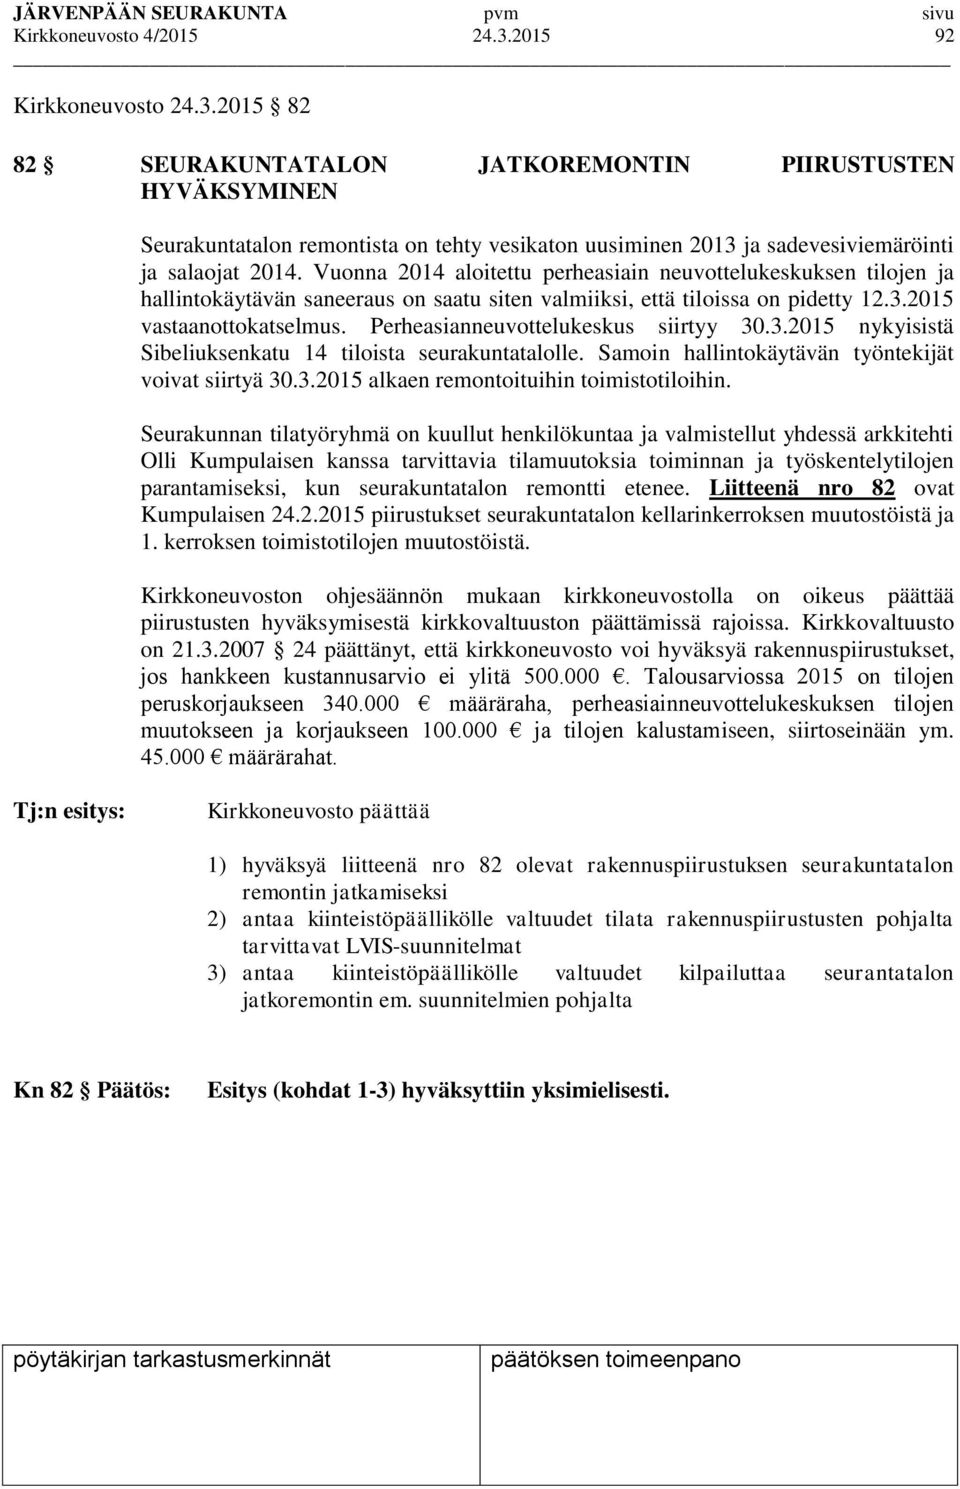 Perheasianneuvottelukeskus siirtyy 30.3.2015 nykyisistä Sibeliuksenkatu 14 tiloista seurakuntatalolle. Samoin hallintokäytävän työntekijät voivat siirtyä 30.3.2015 alkaen remontoituihin toimistotiloihin.